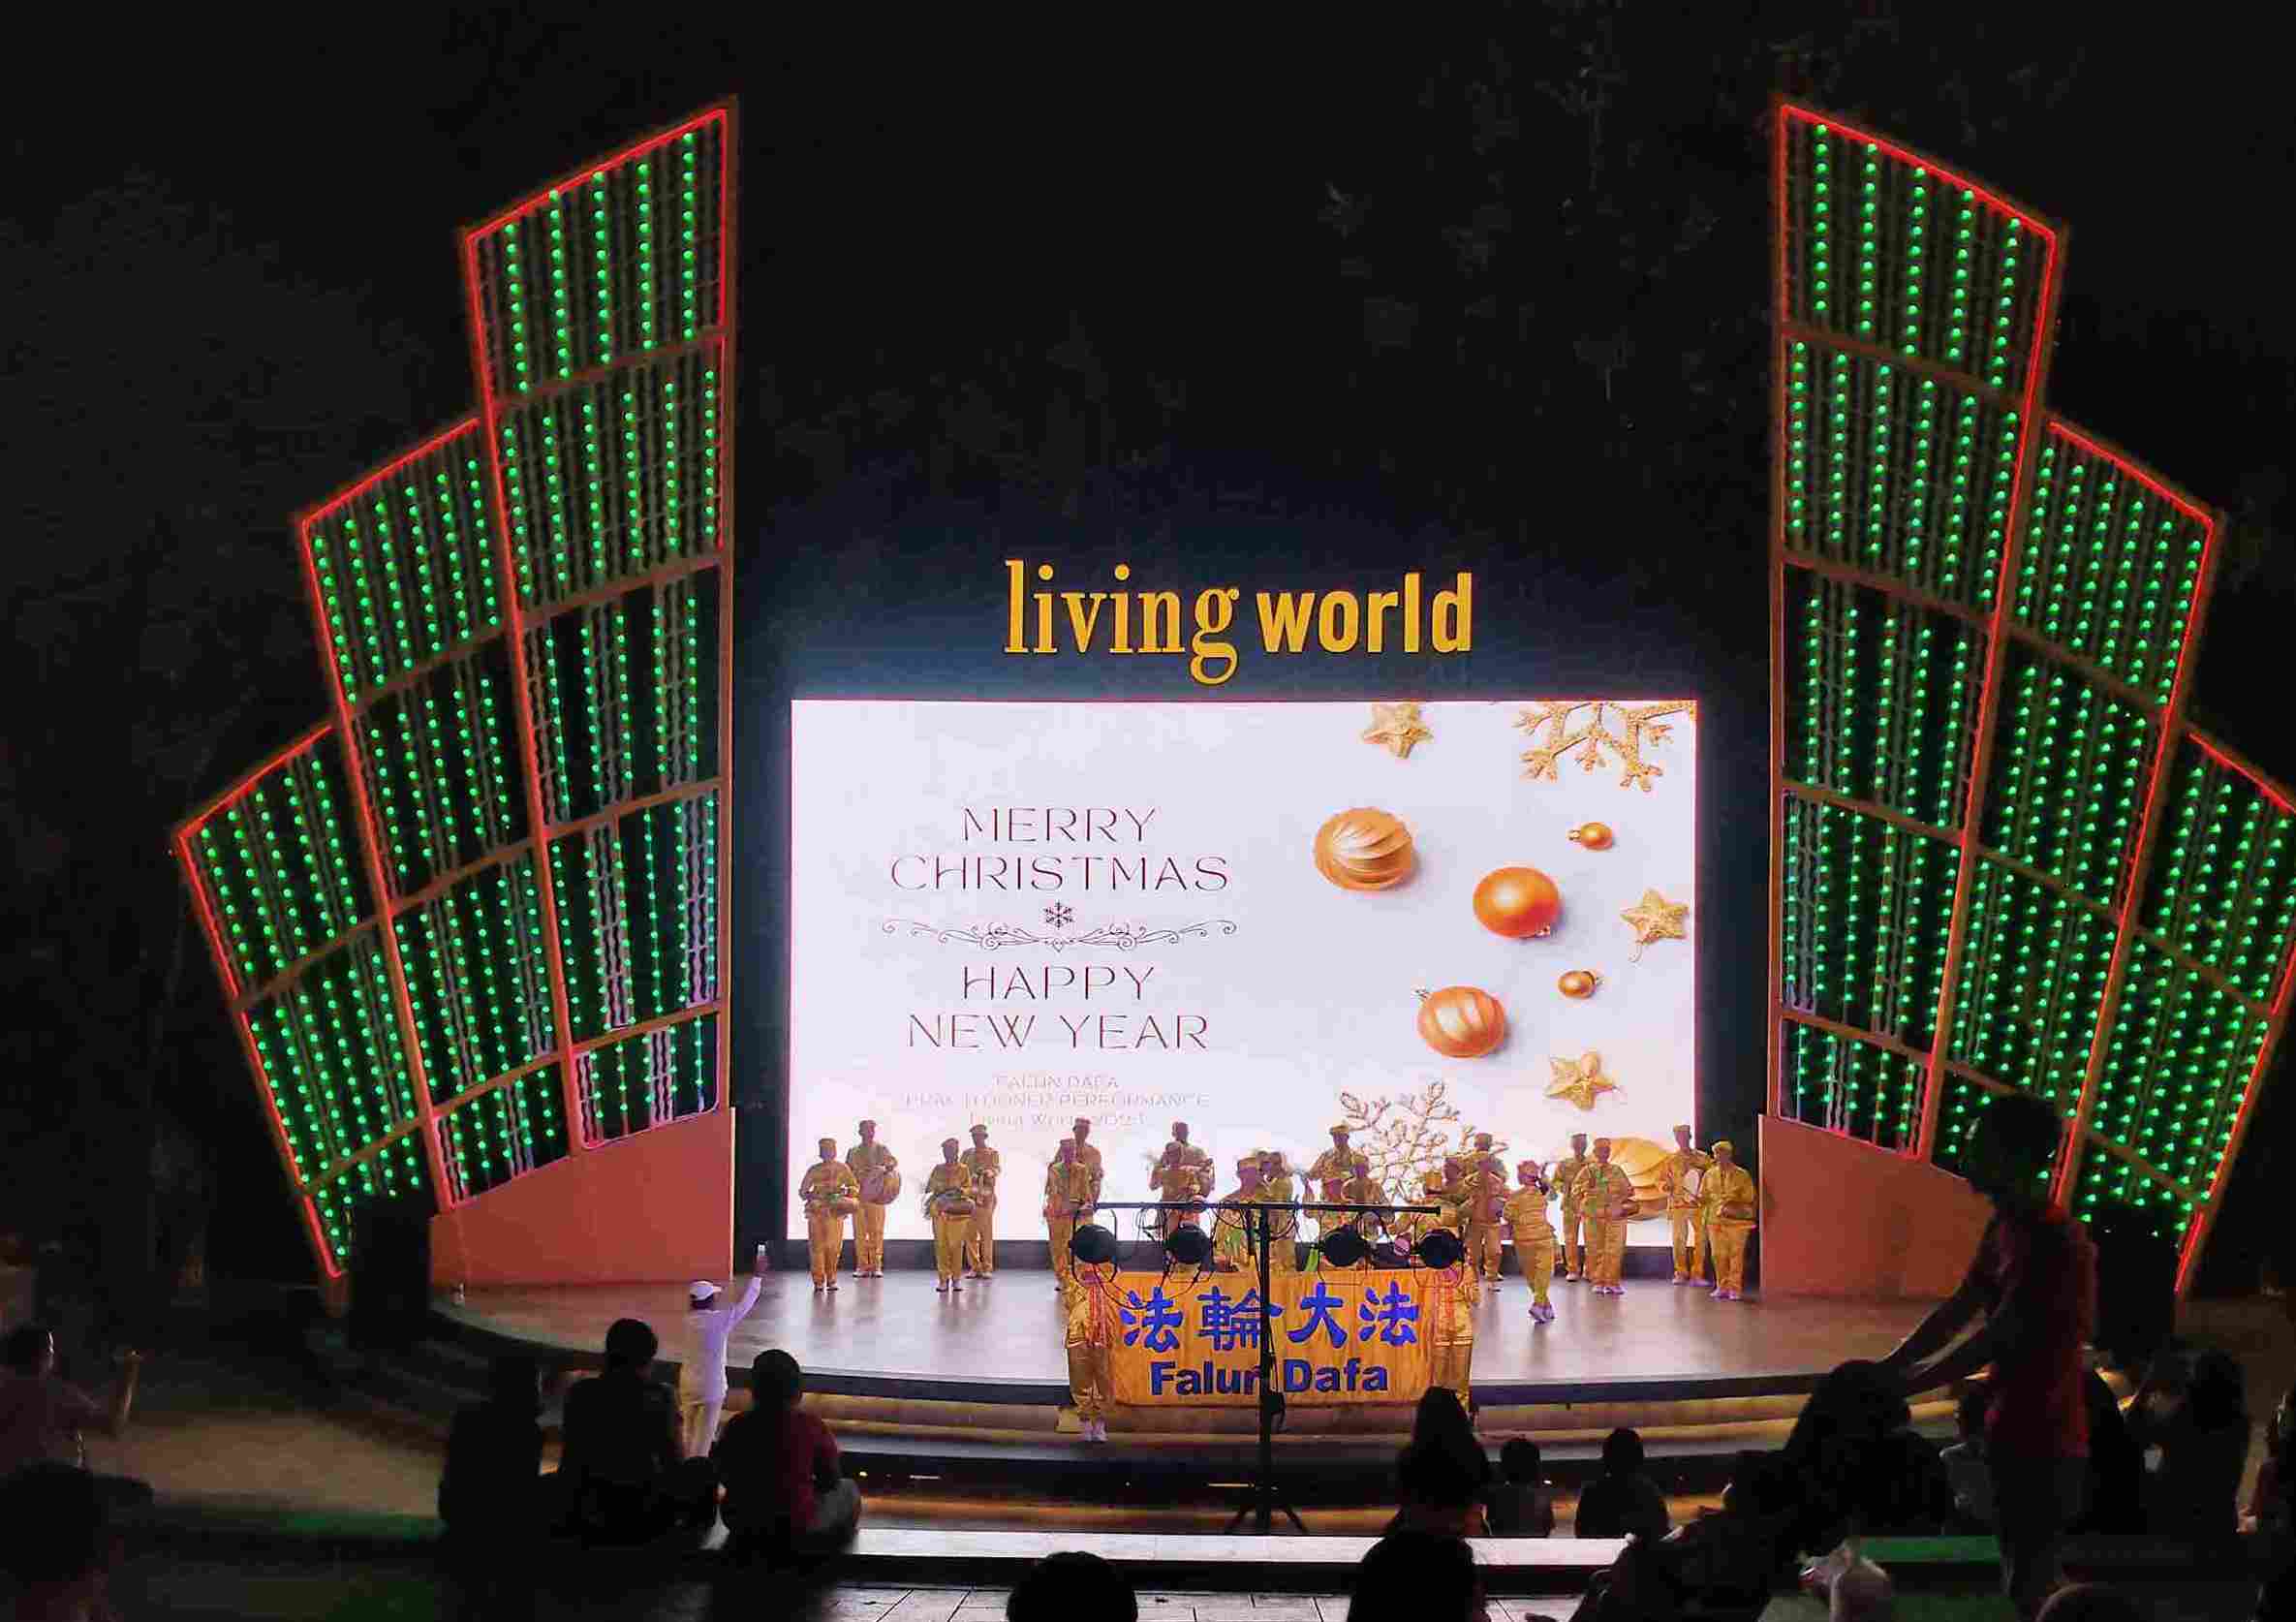 Image for article ​Bali, Endonezya: Uygulayıcılar Açık Hava Tiyatrosunda Falun Dafa'yı Tanıttılar